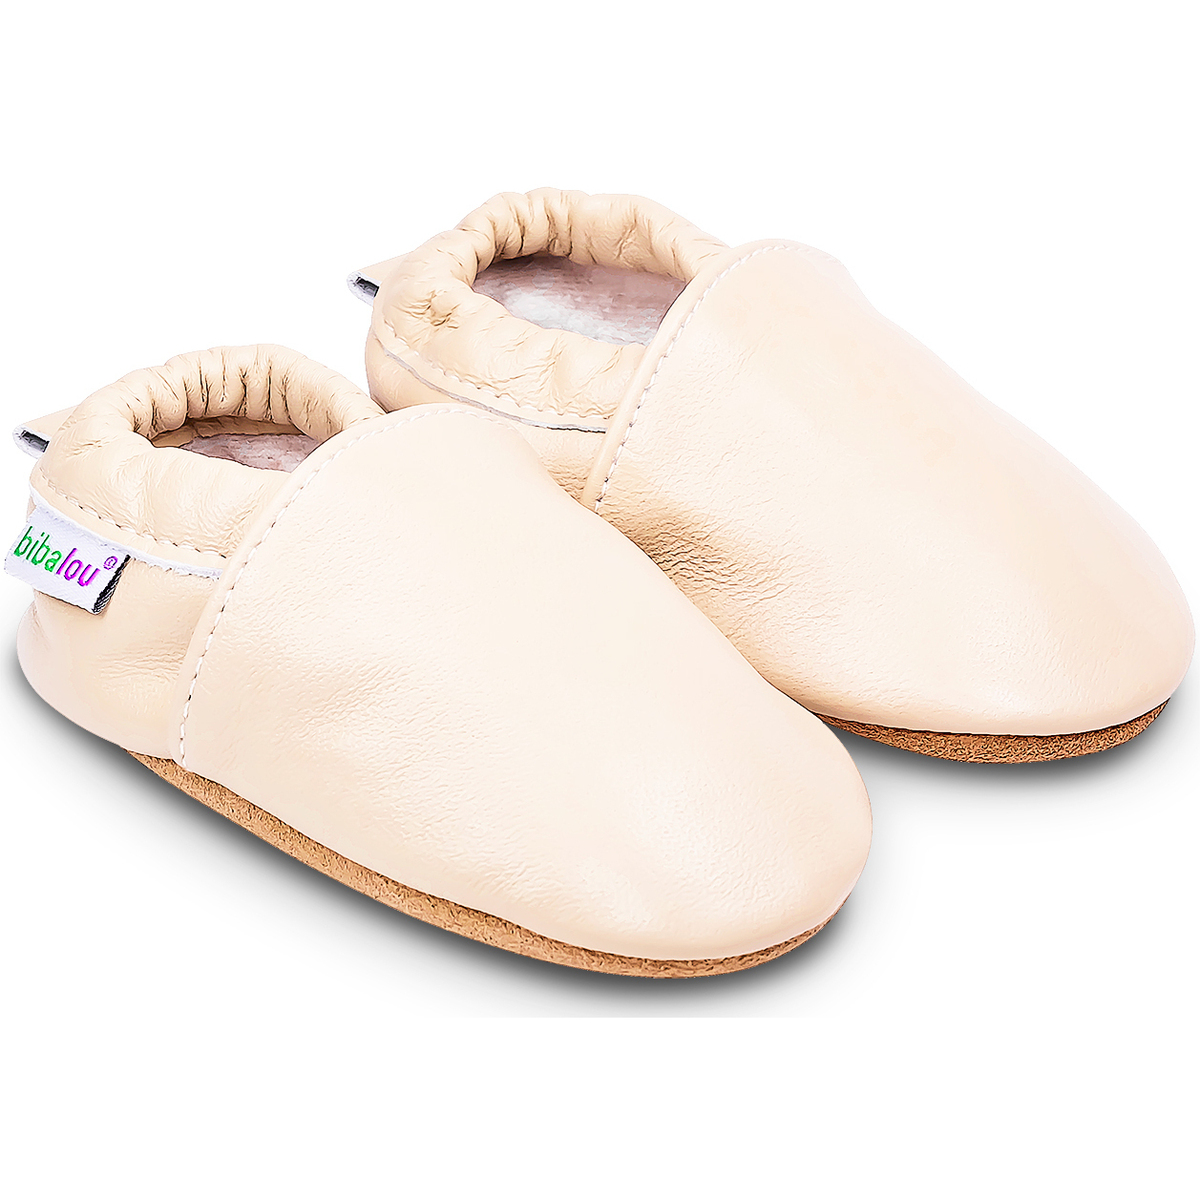 Chaussures Enfant Chaussons bébés Bibalou Unis - Beige Beige